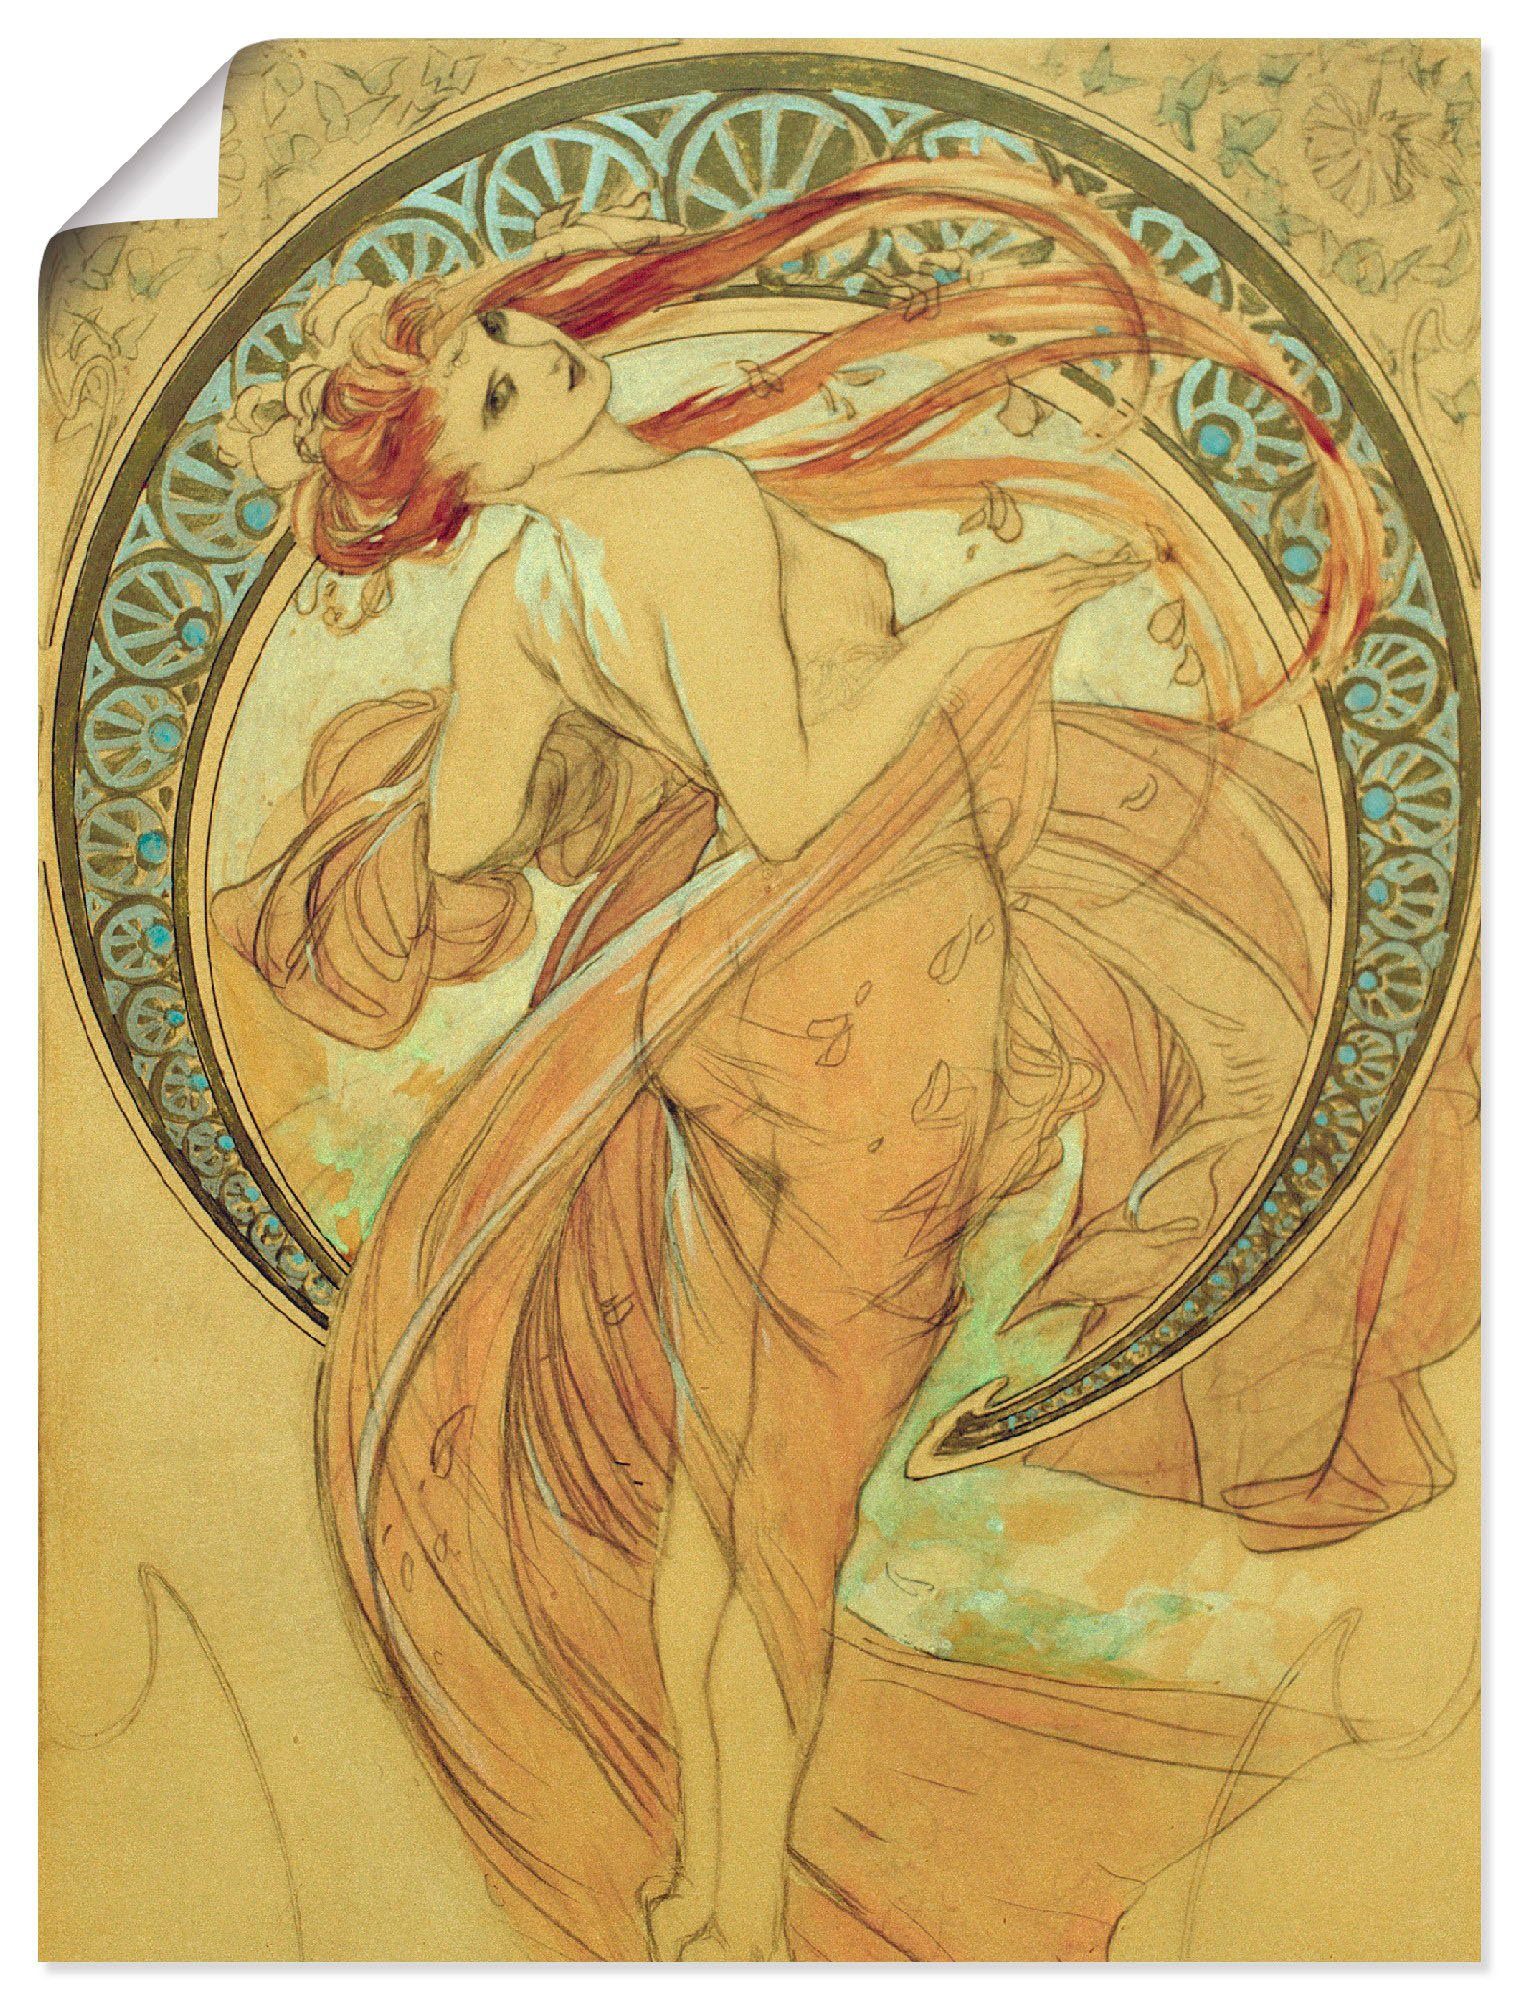 Artland Artprint De dans, 1898 in vele afmetingen & productsoorten -artprint op linnen, poster, muursticker / wandfolie ook geschikt voor de badkamer (1 stuk)